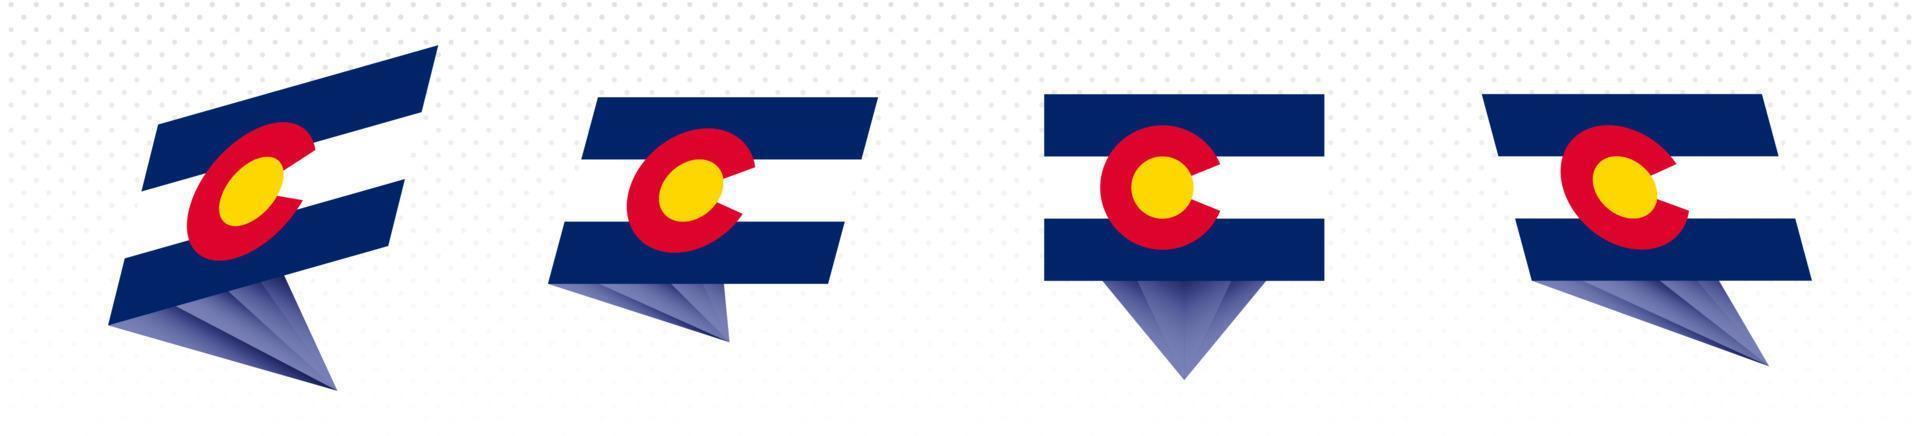 bandeira do estado do Colorado em design abstrato moderno, conjunto de bandeiras. vetor